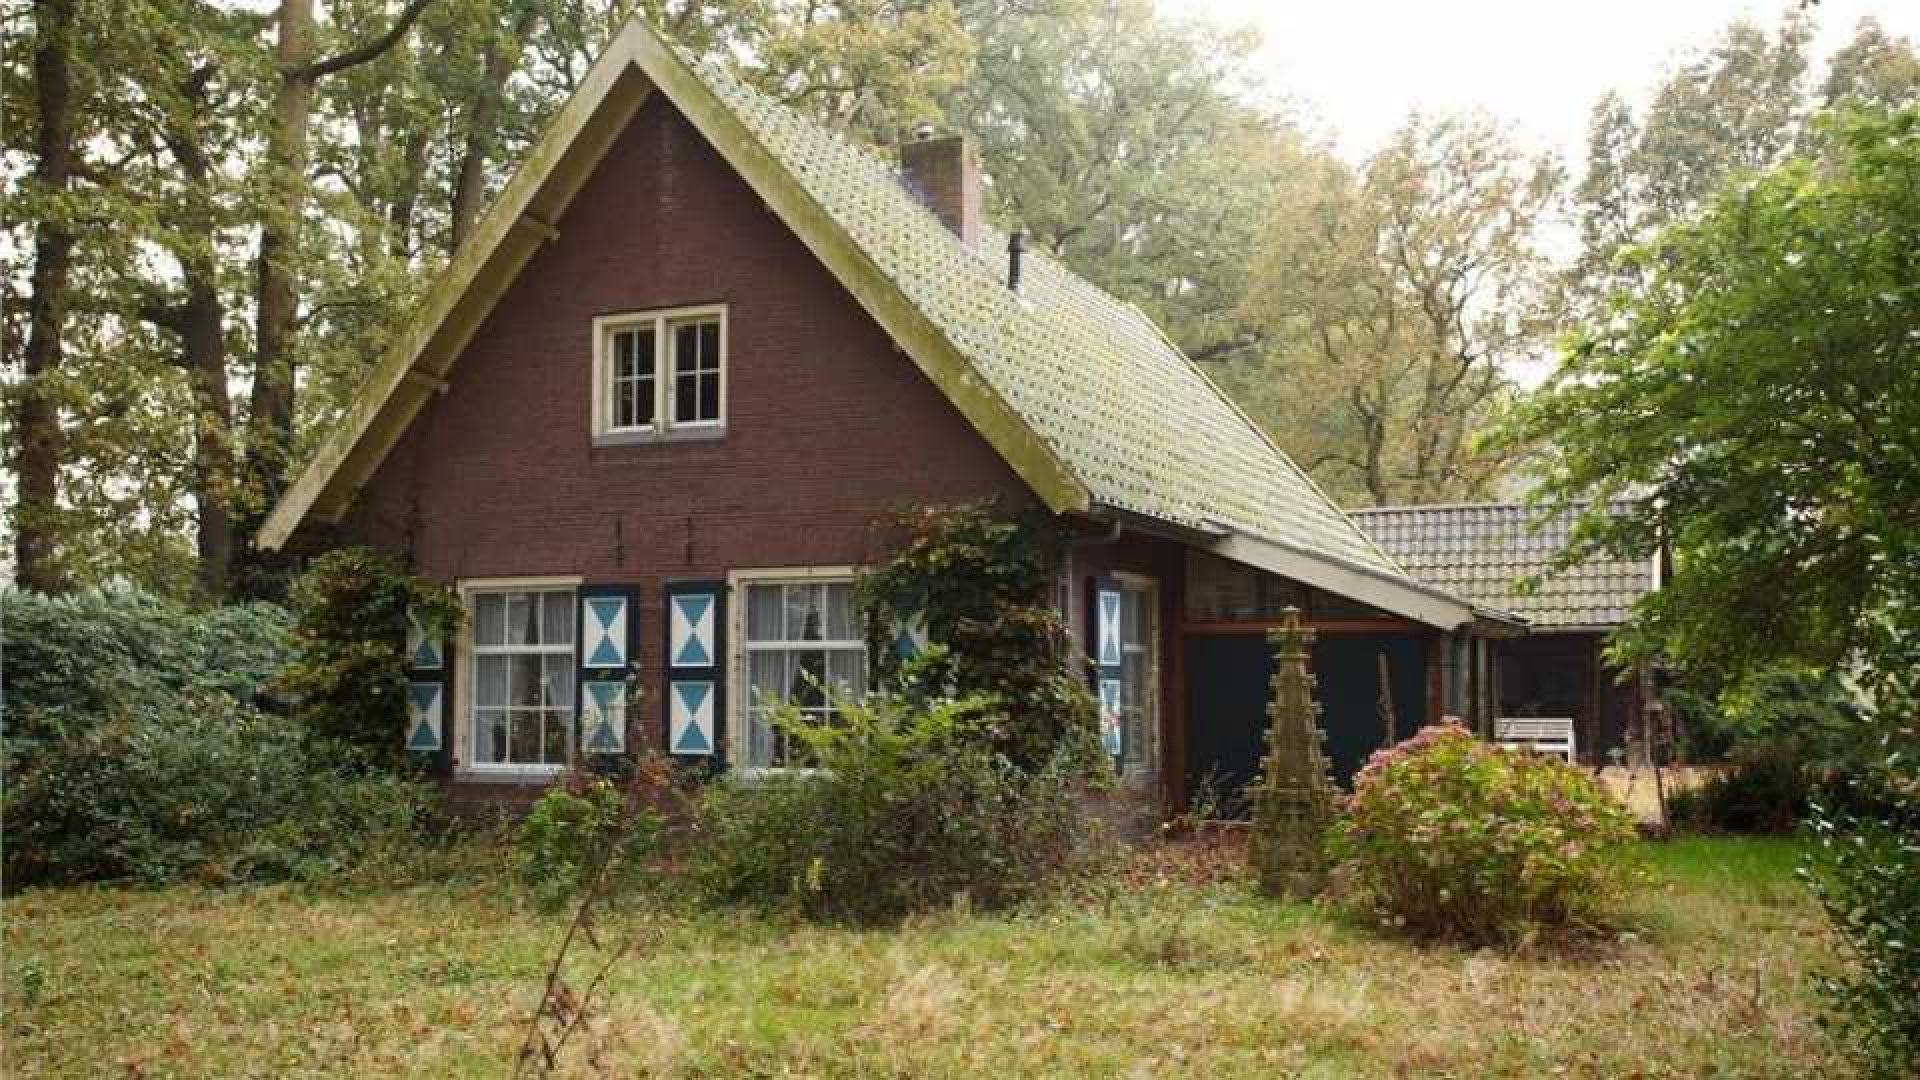 Oud PvdA topman Marcel van Dam verruilt riant landhuis voor eeuwenoud kasteel. Zie foto's 14